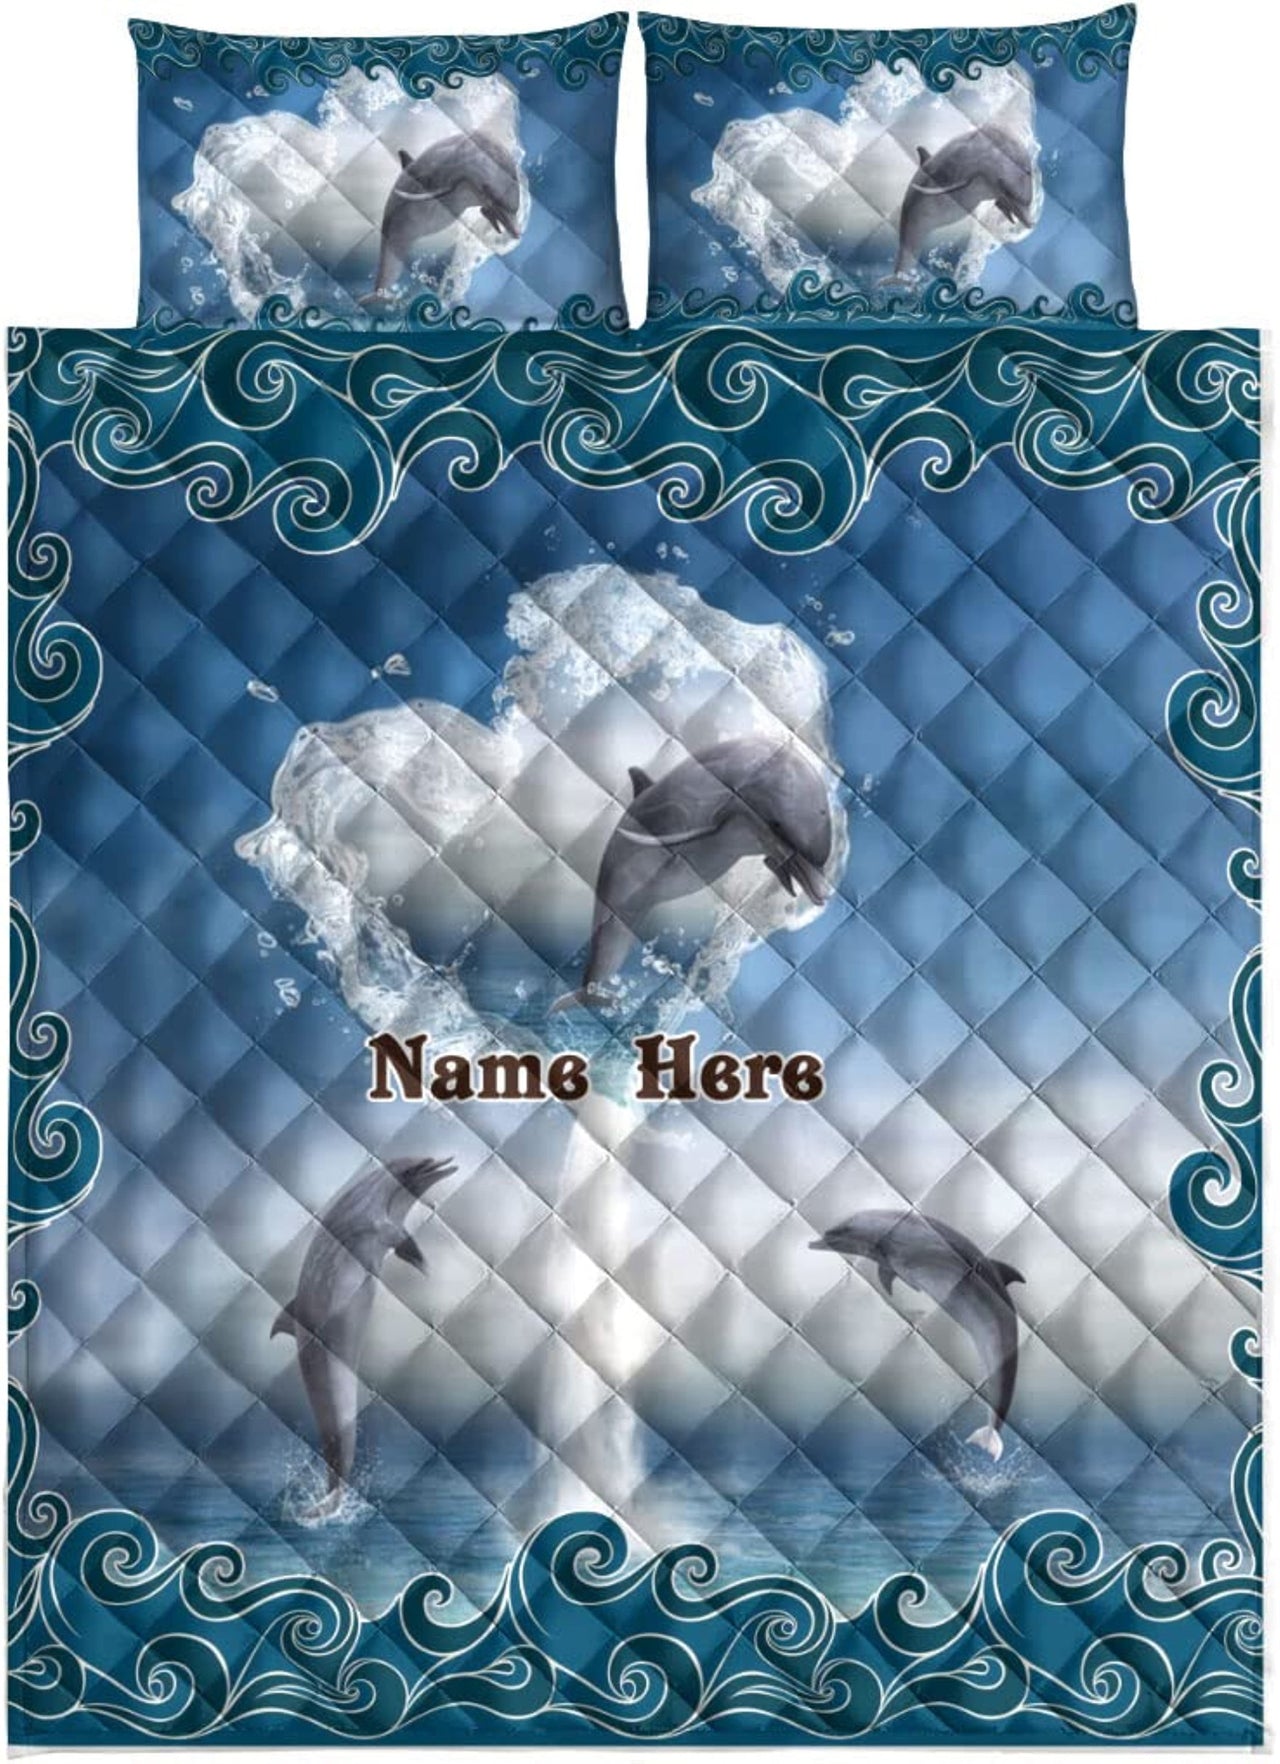 Custom Quilt Sets Dolphin & Heart Waves Ocean Animal Lover Premium Quilt Bedding for Boys Girls Men Women